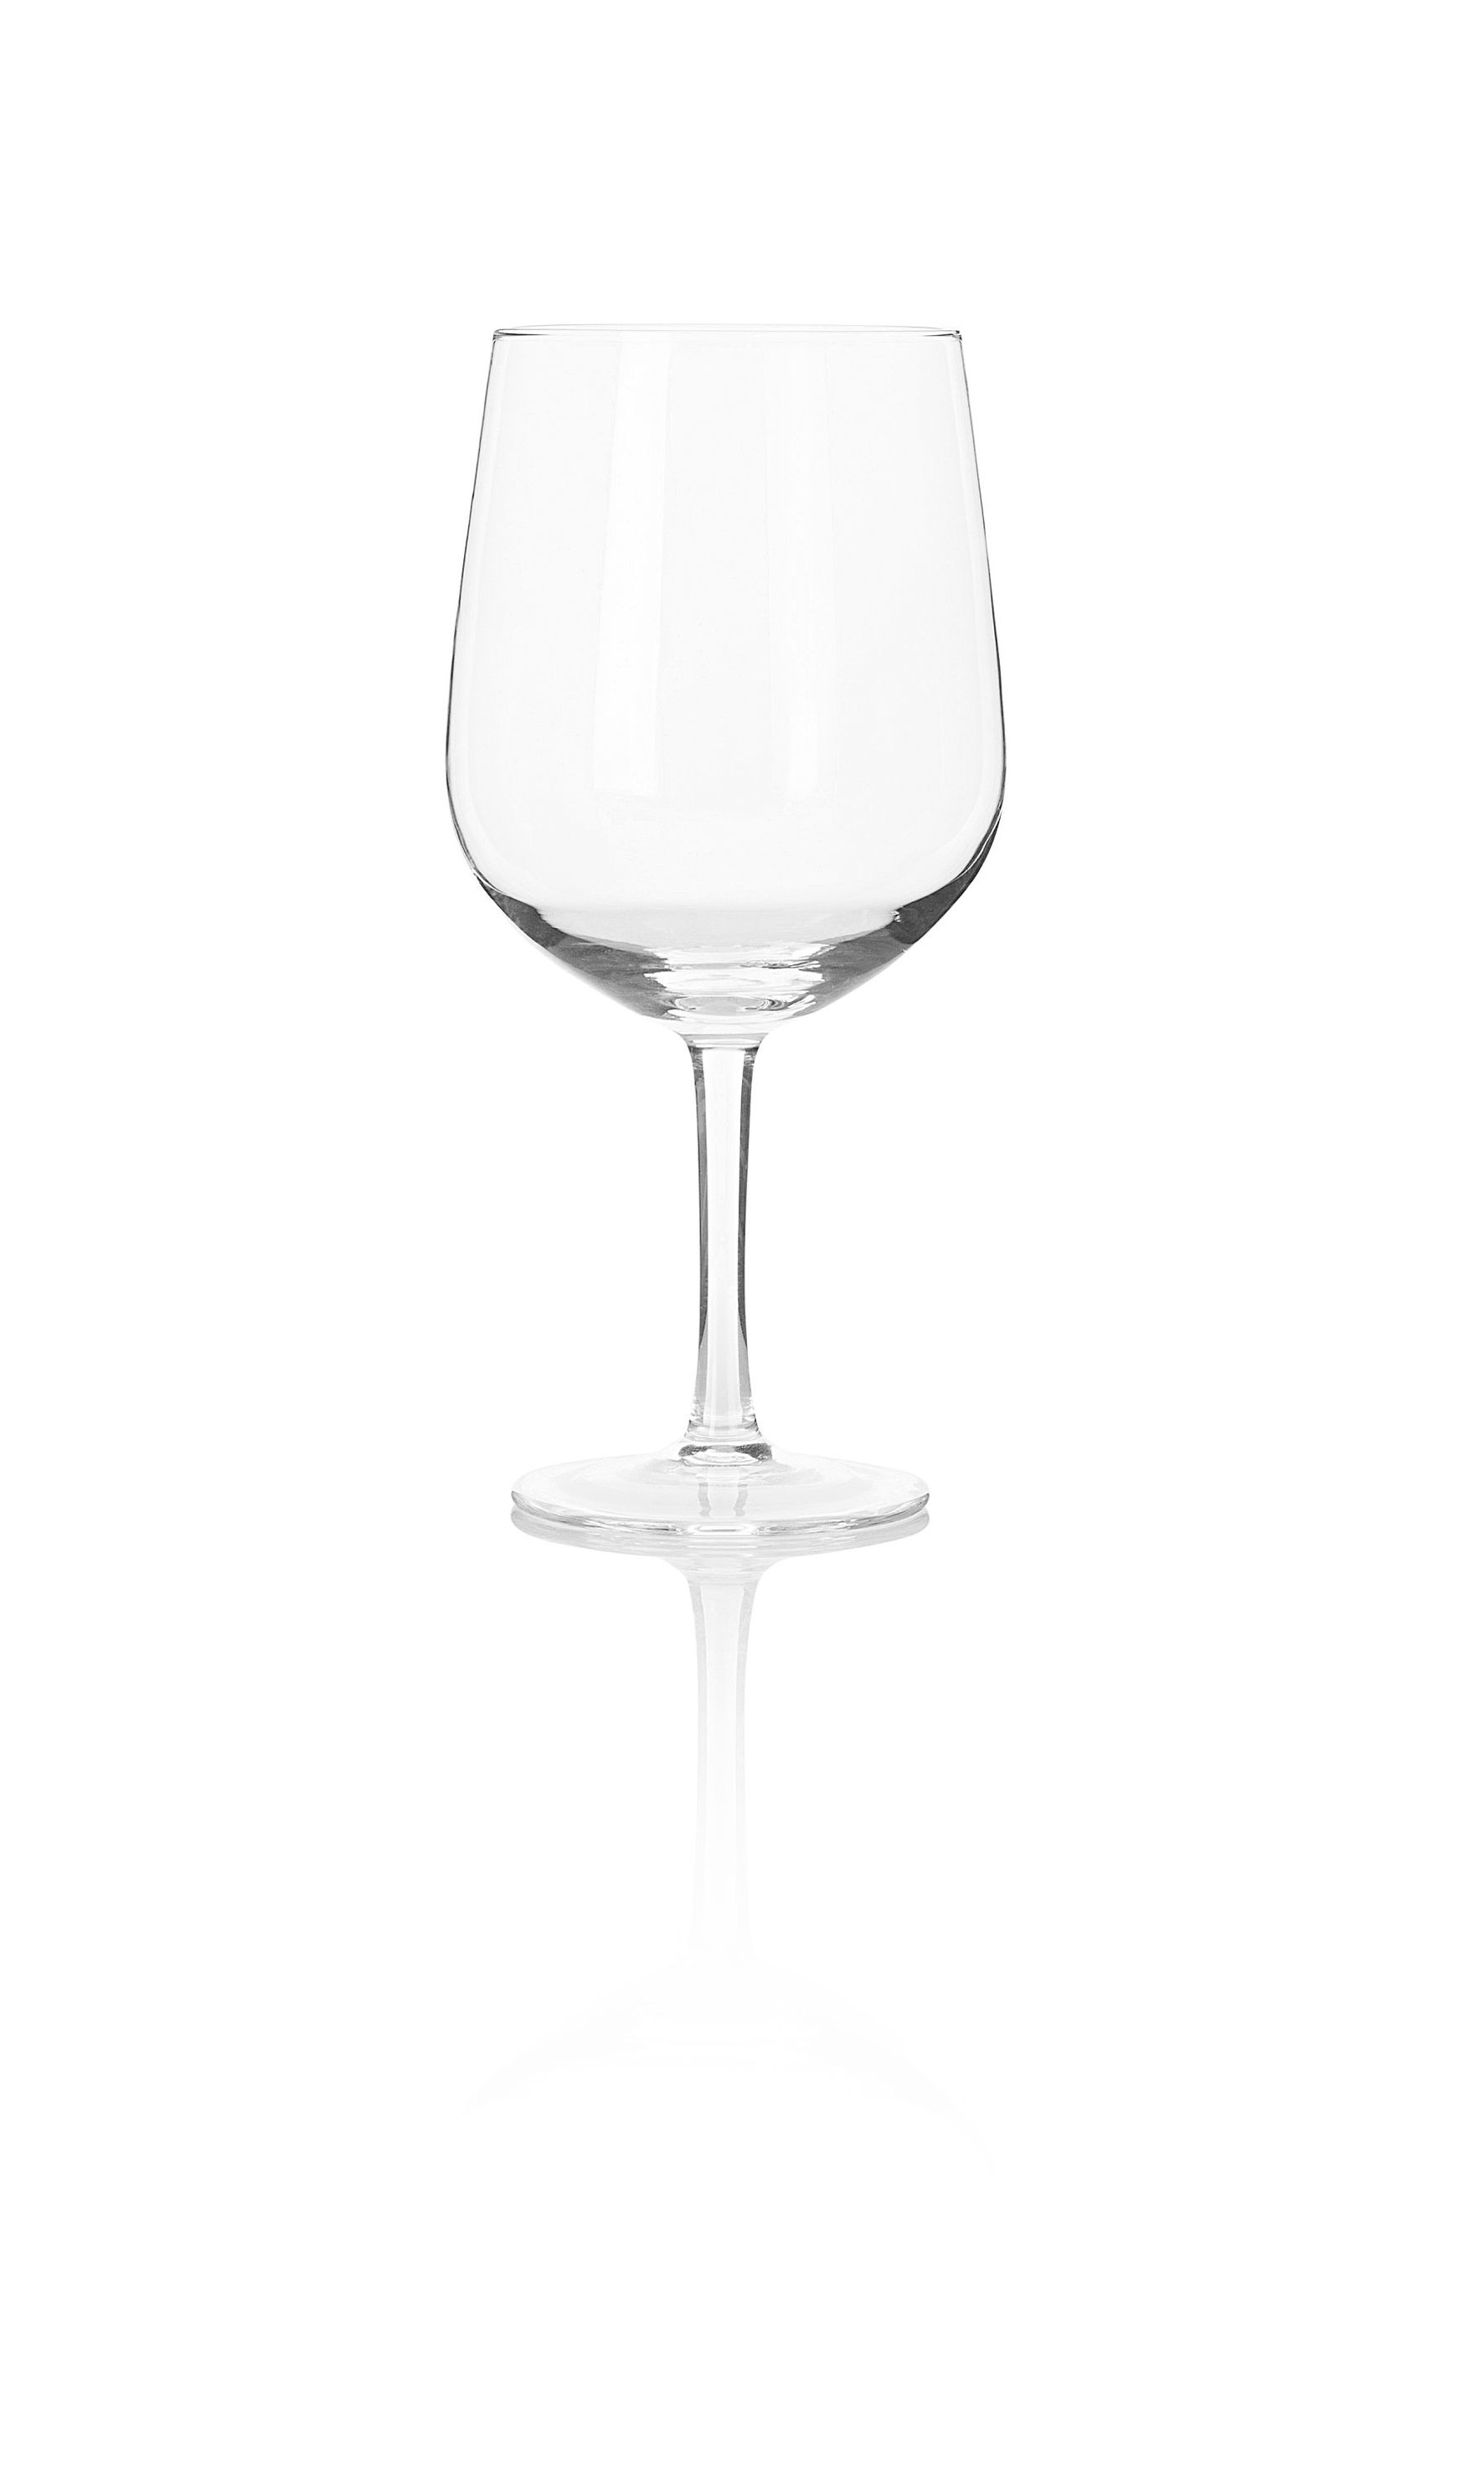 XXL Weinglas 750ml jetzt bei Weltbild.ch bestellen